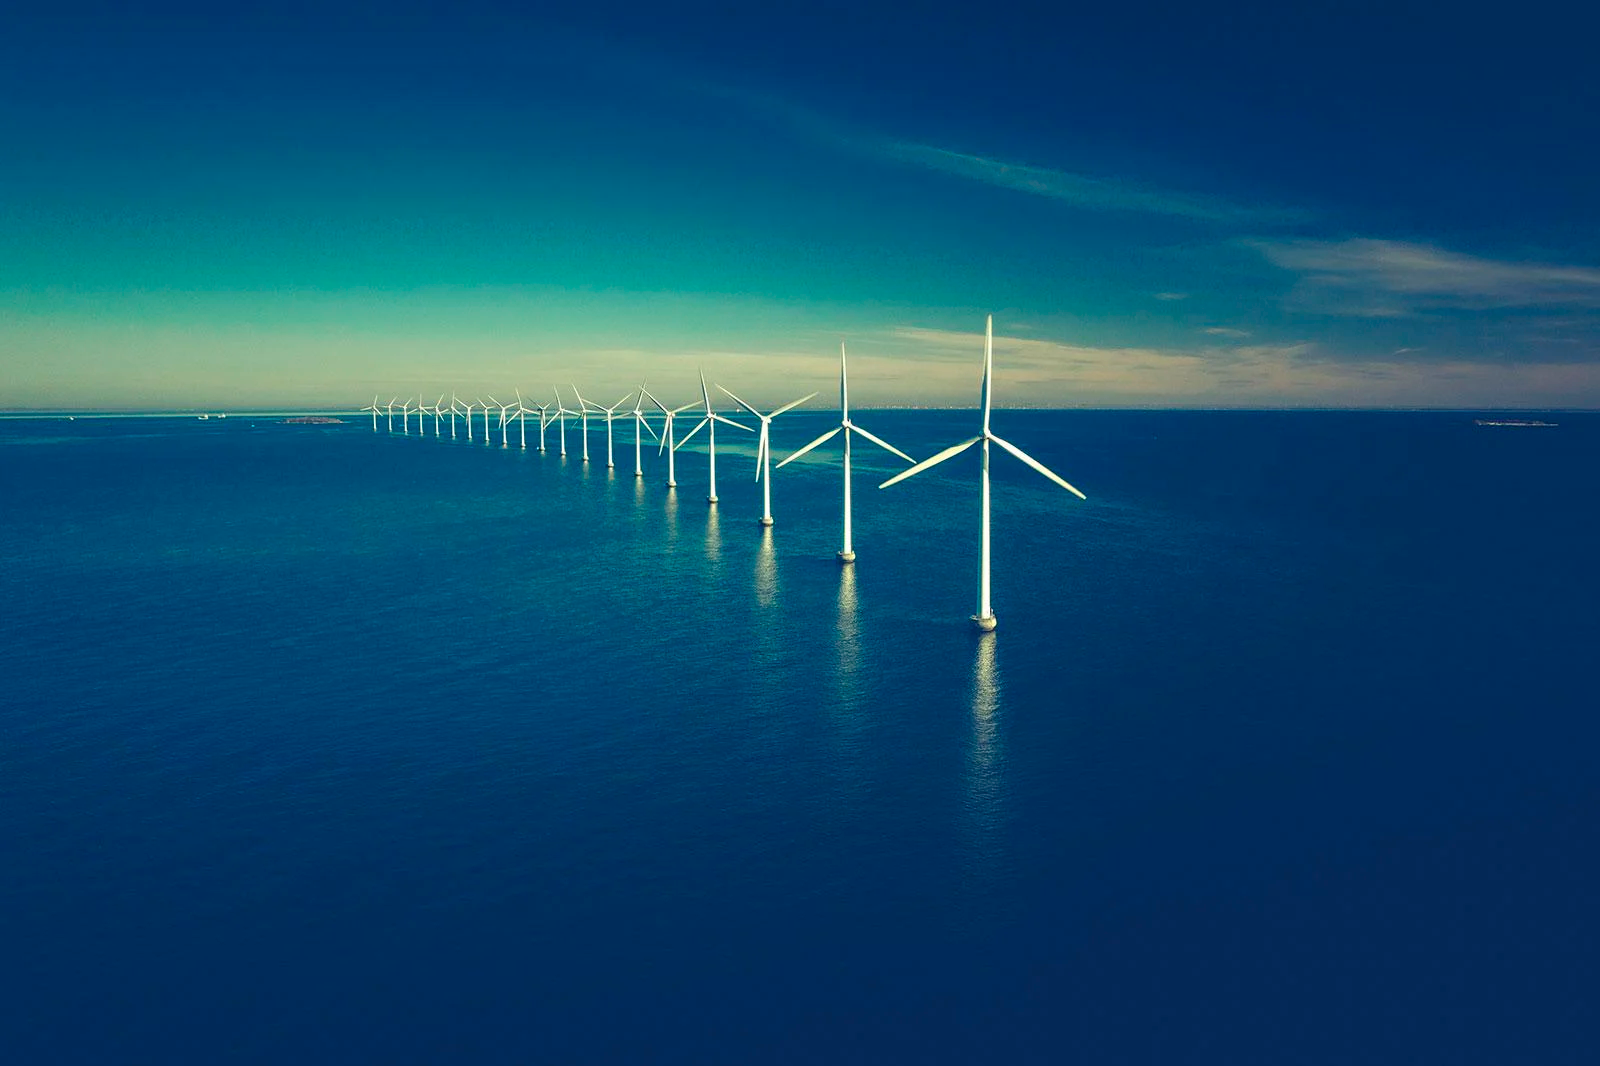 TotalEnergies e Galp fecham parceria para eólicas offshore em Portugal. Na imagem: Aerogeradores de eólica offshore com torres fixadas no leito marinho da costa da Noruega (Foto: Divulgação TotalEnergies)